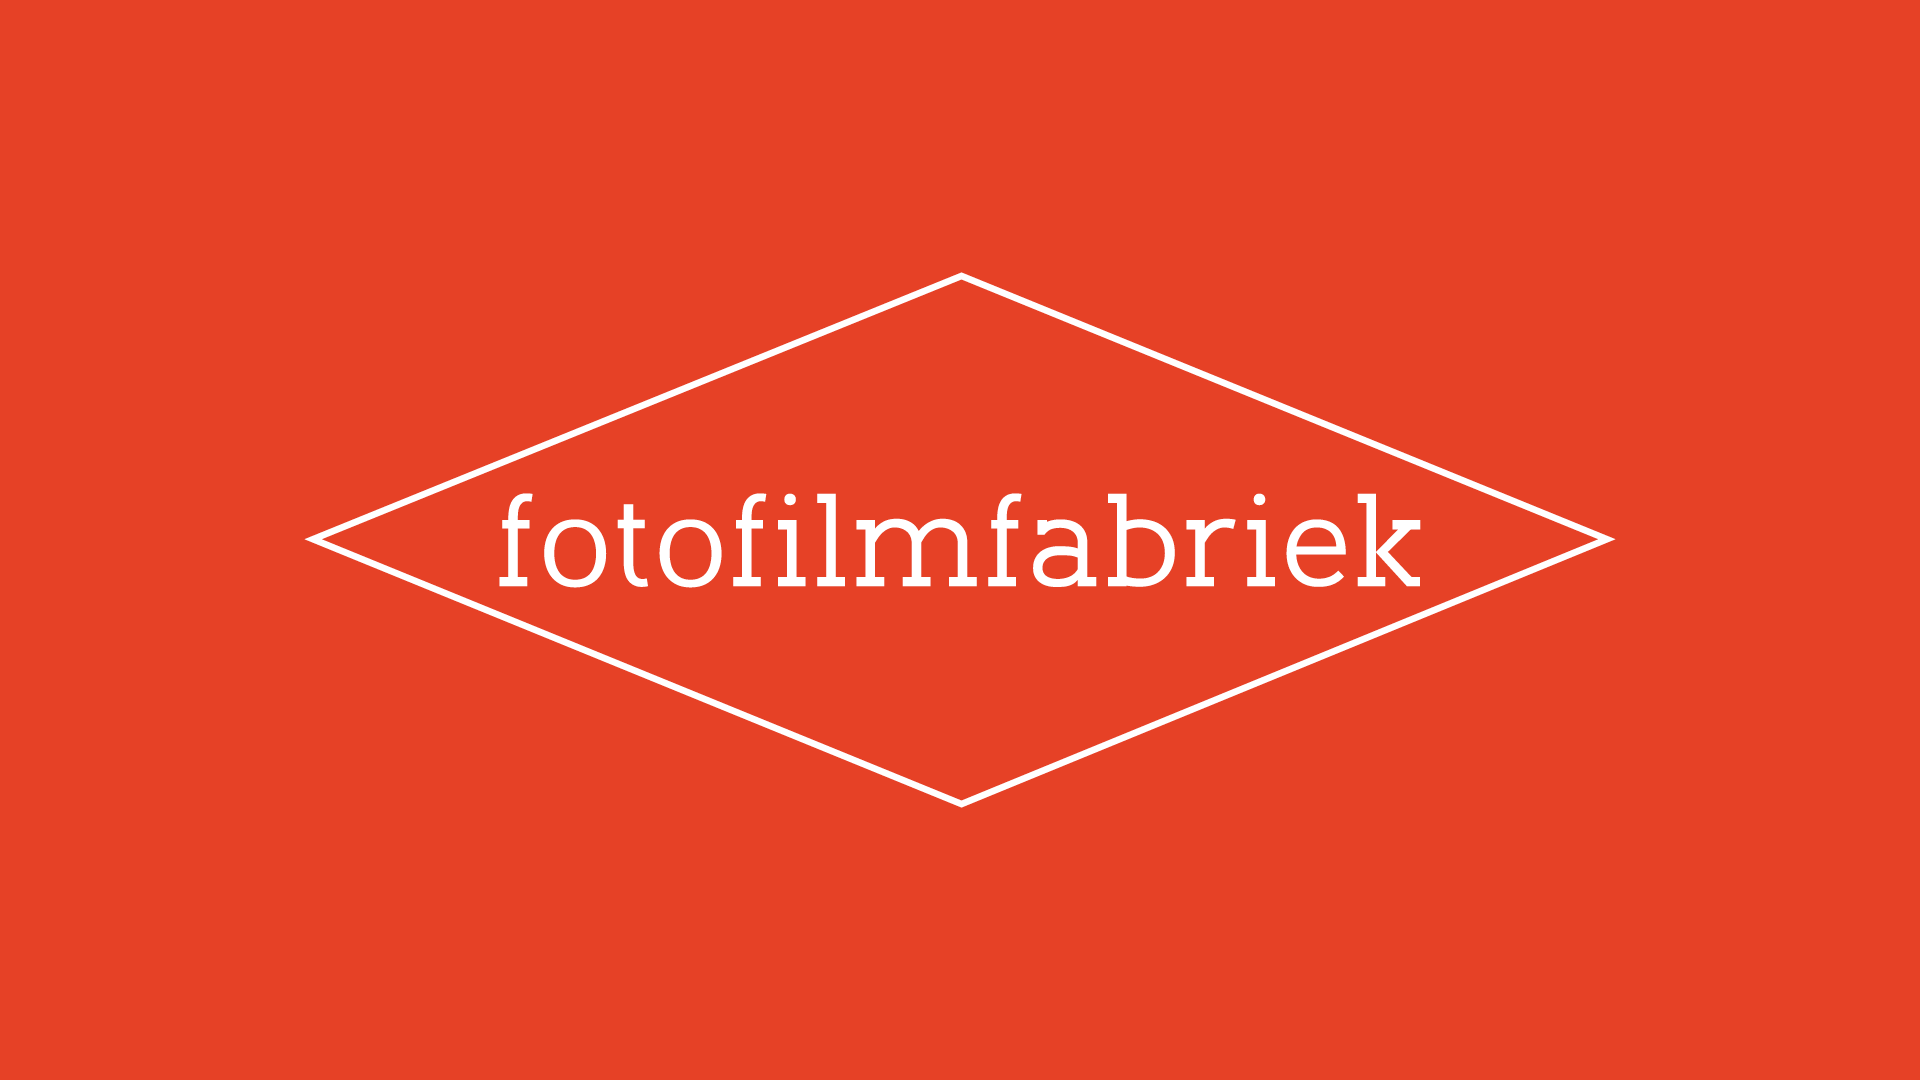 FotoFilmFabriek | Film, papier, chemie, camera's en doka voor de analoge fotograaf